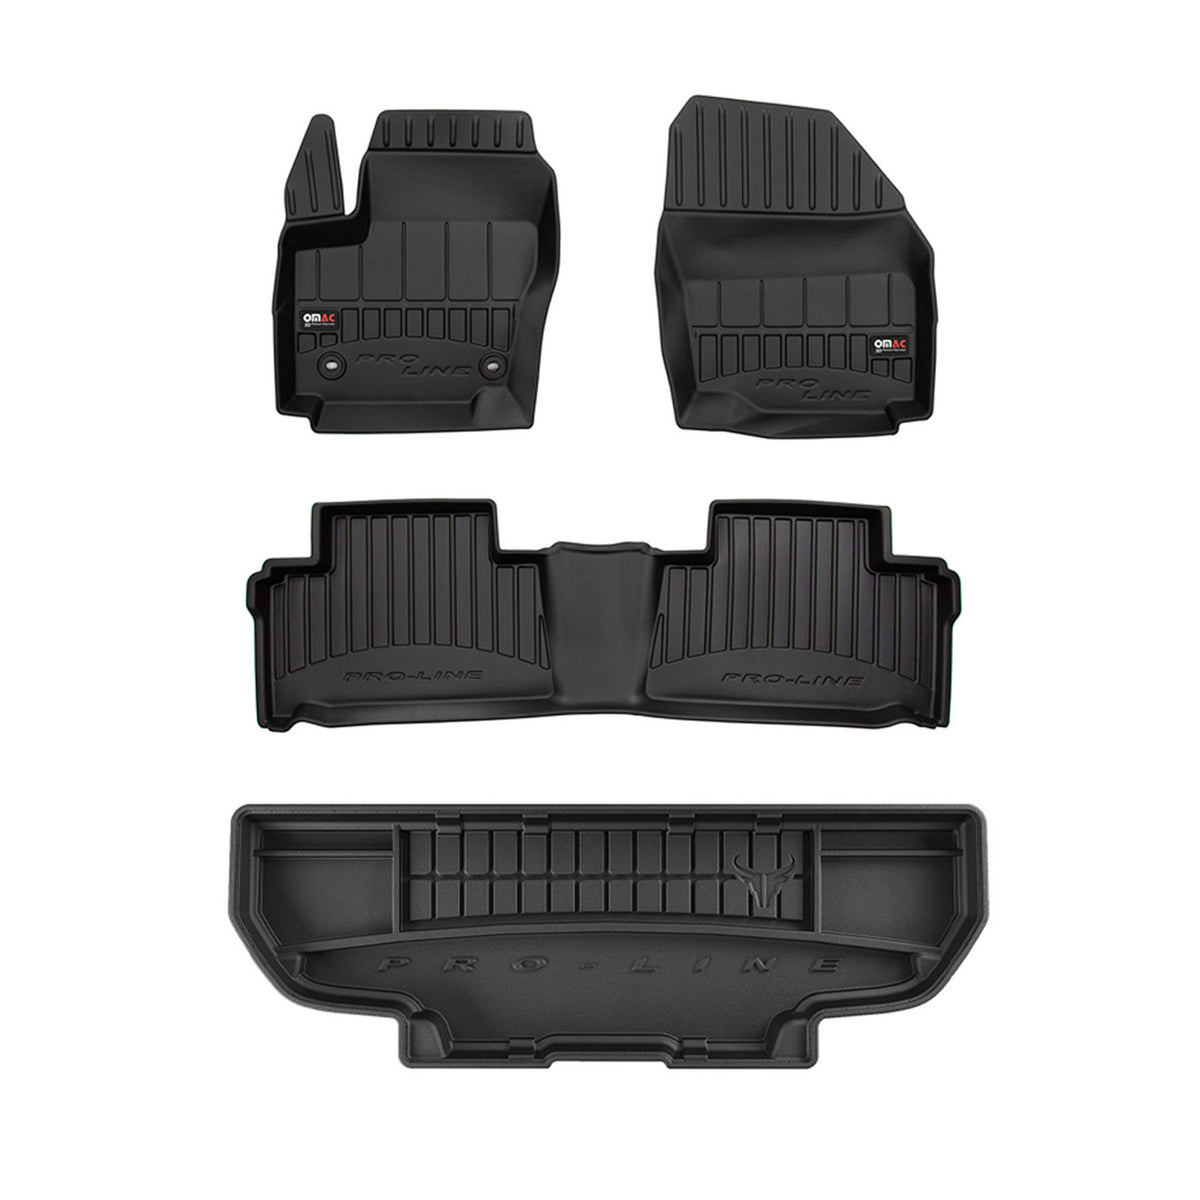 OMAC Fußmatten & Kofferraumwanne Set für Ford Galaxy 2006-2015 Schwarz Gummi 4x